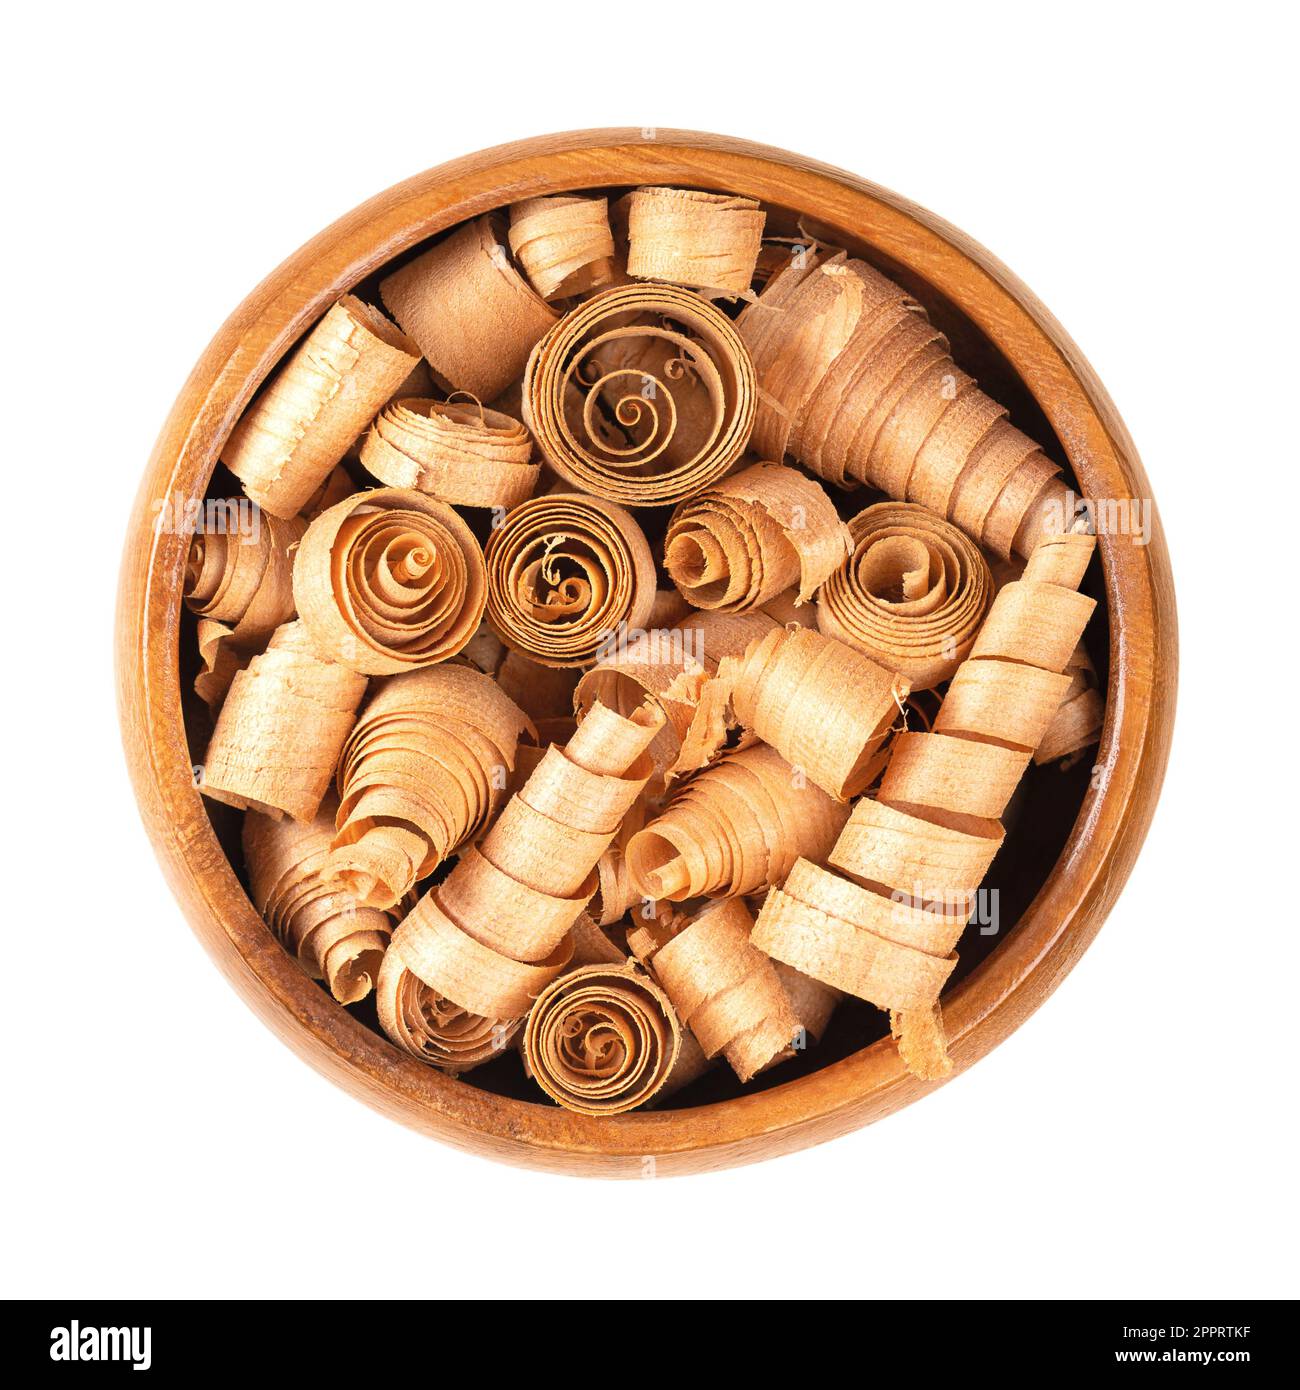 Spiralförmige Holzspäne aus Schweizer Kiefer, in Holzschüssel. Pinus cembra, europäische weiße Kiefer, mit ausgeprägtem Geruch nach ätherischem Öl Pinosylvin. Stockfoto